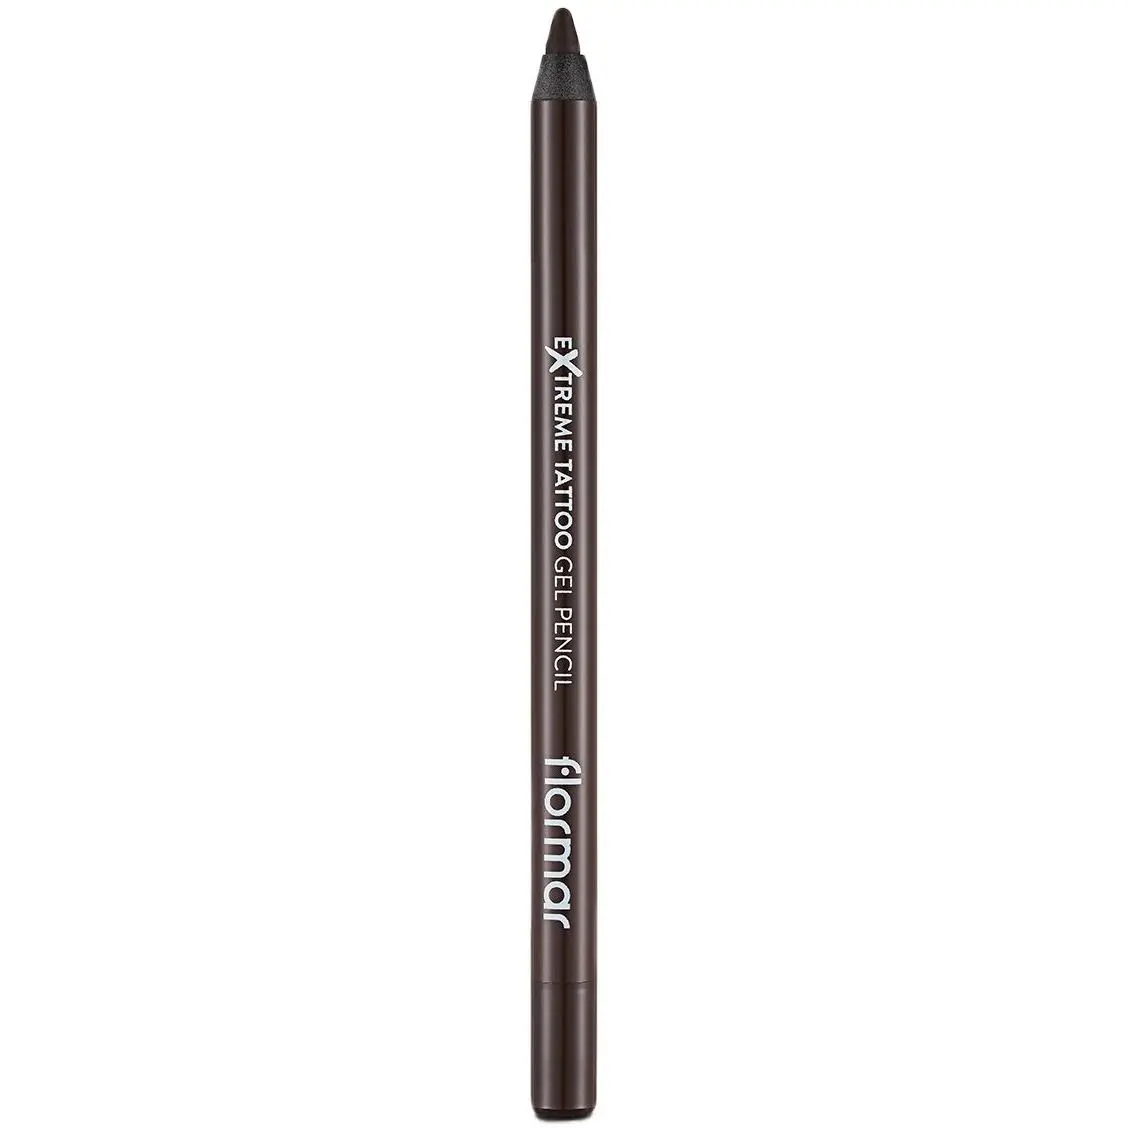 Гелевий олівець для очей Flormar Extreme Tattoo відтінок 02 (Walnut) 1.2 г - фото 2